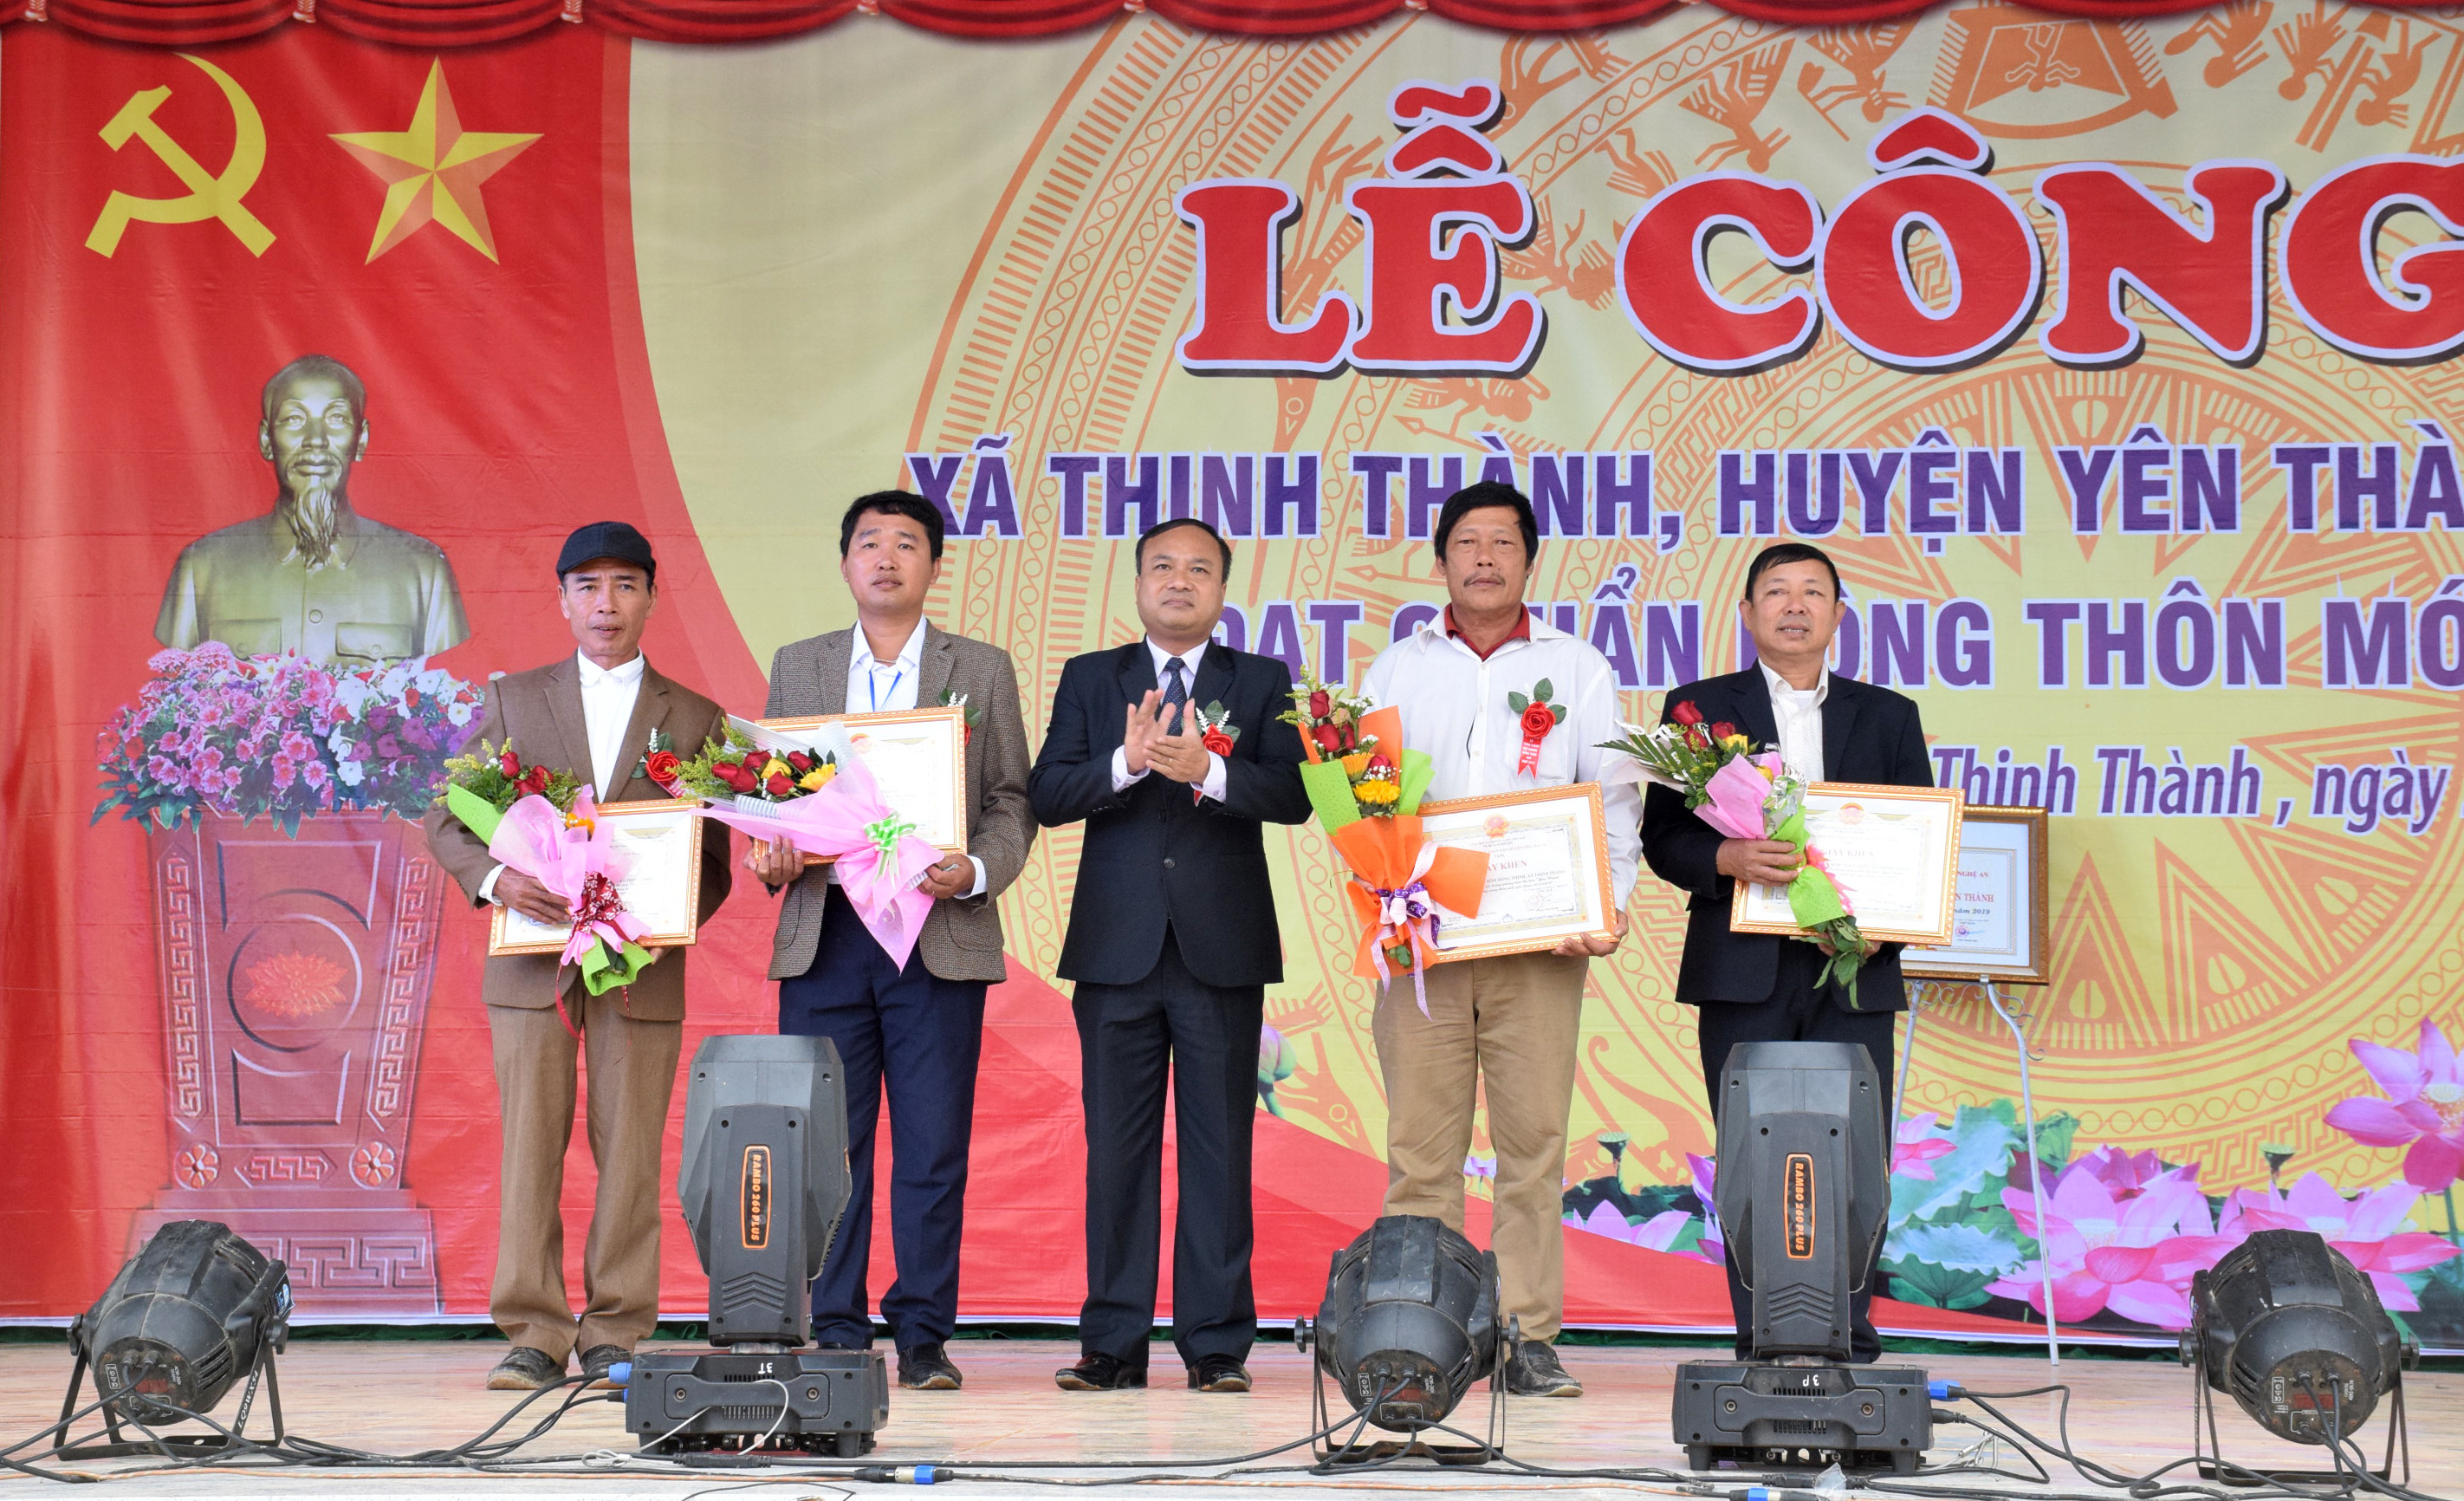 Lãnh đạo Huyện ủy Yên Thành trao thưởng Giấy khen cho các tập thể, cá nhân có thành tích xuất sắc trong phong trào xây dựng NTM tại địa phương. Ảnh: Xuân Hoàng